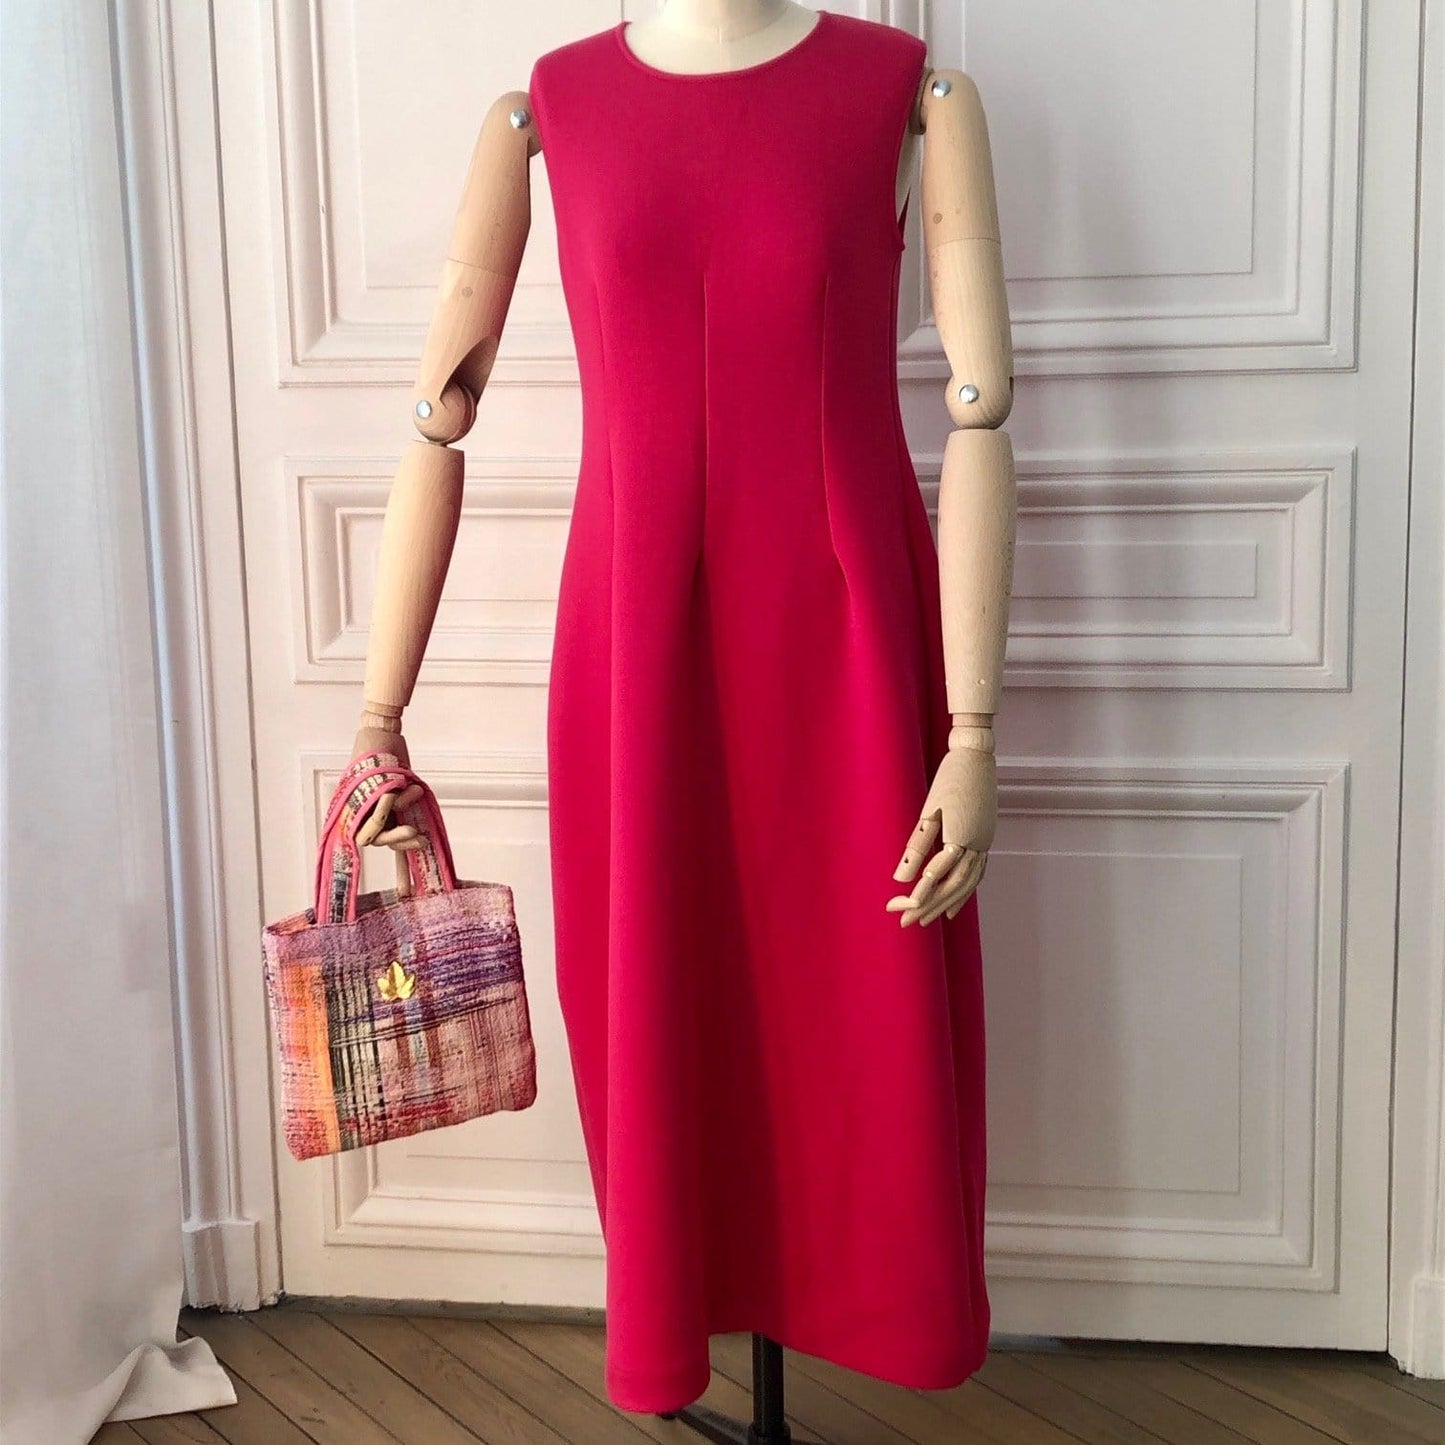 Mini sac Bienvenue en tweed rose tendre, rose vif, rouge, noir, lilas et orange tissé et fabriqué en France